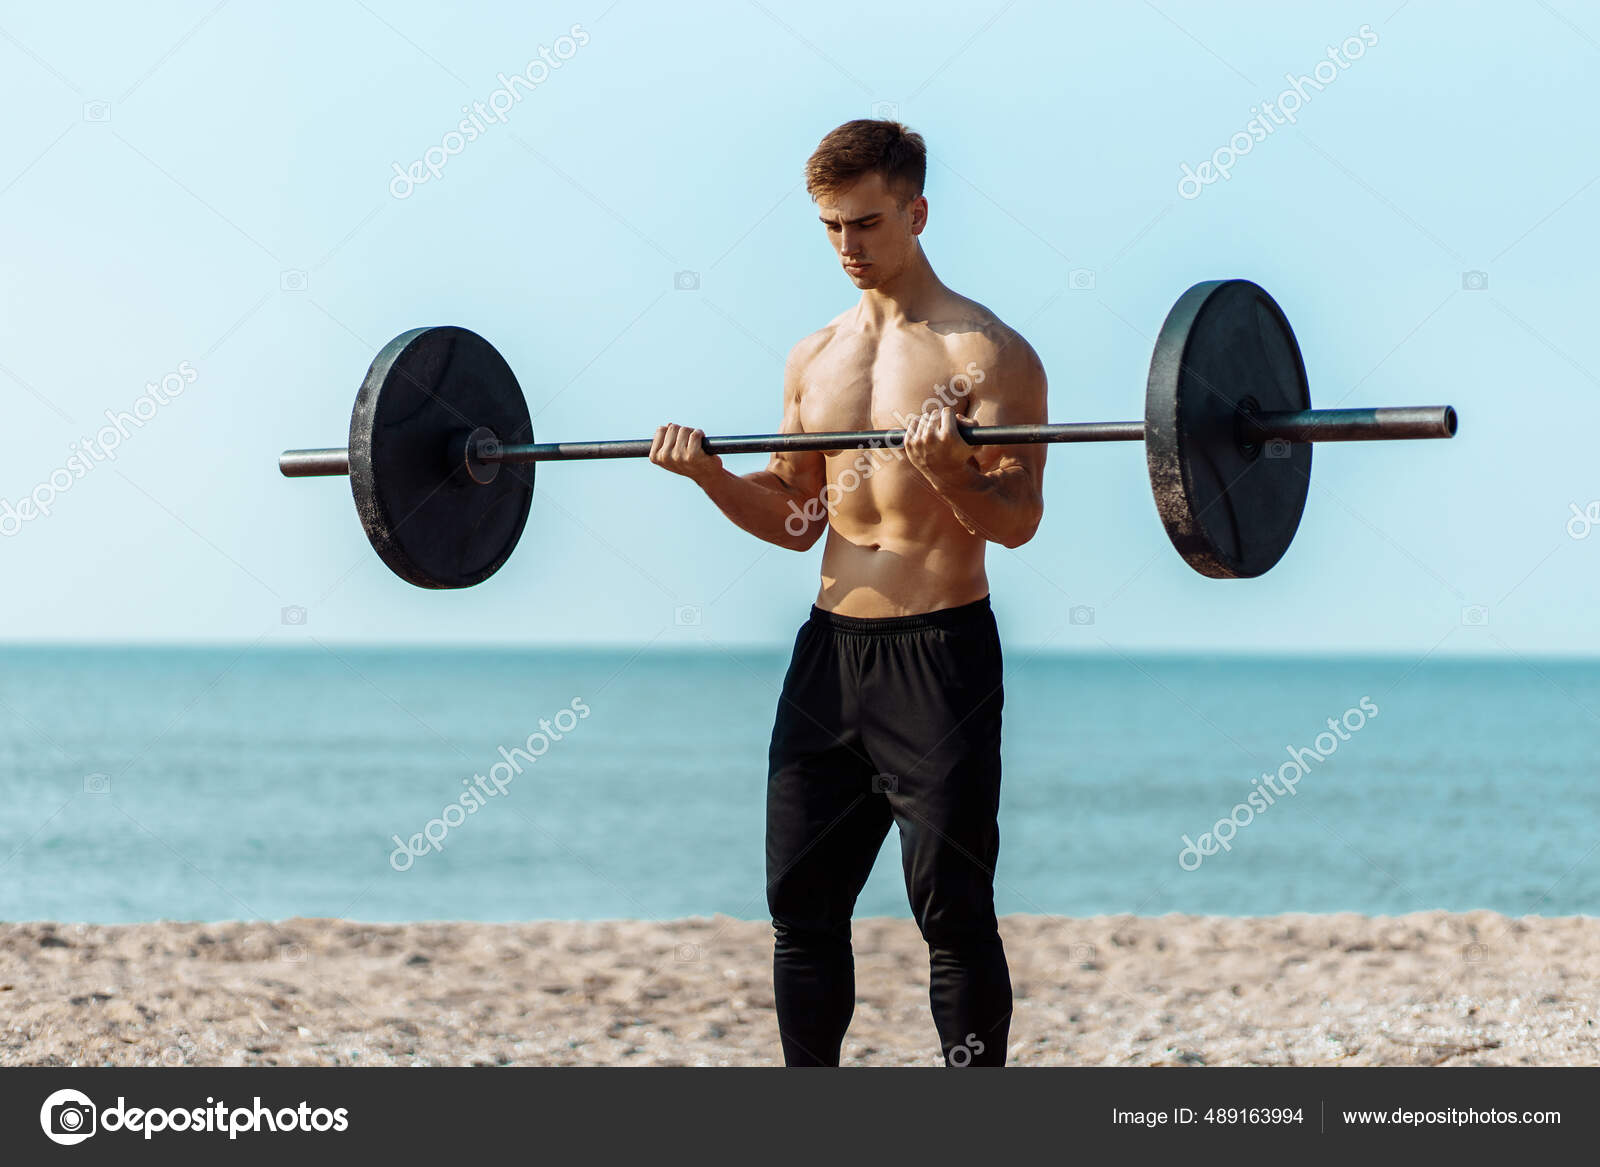 A bulky, muscular guy on the beach